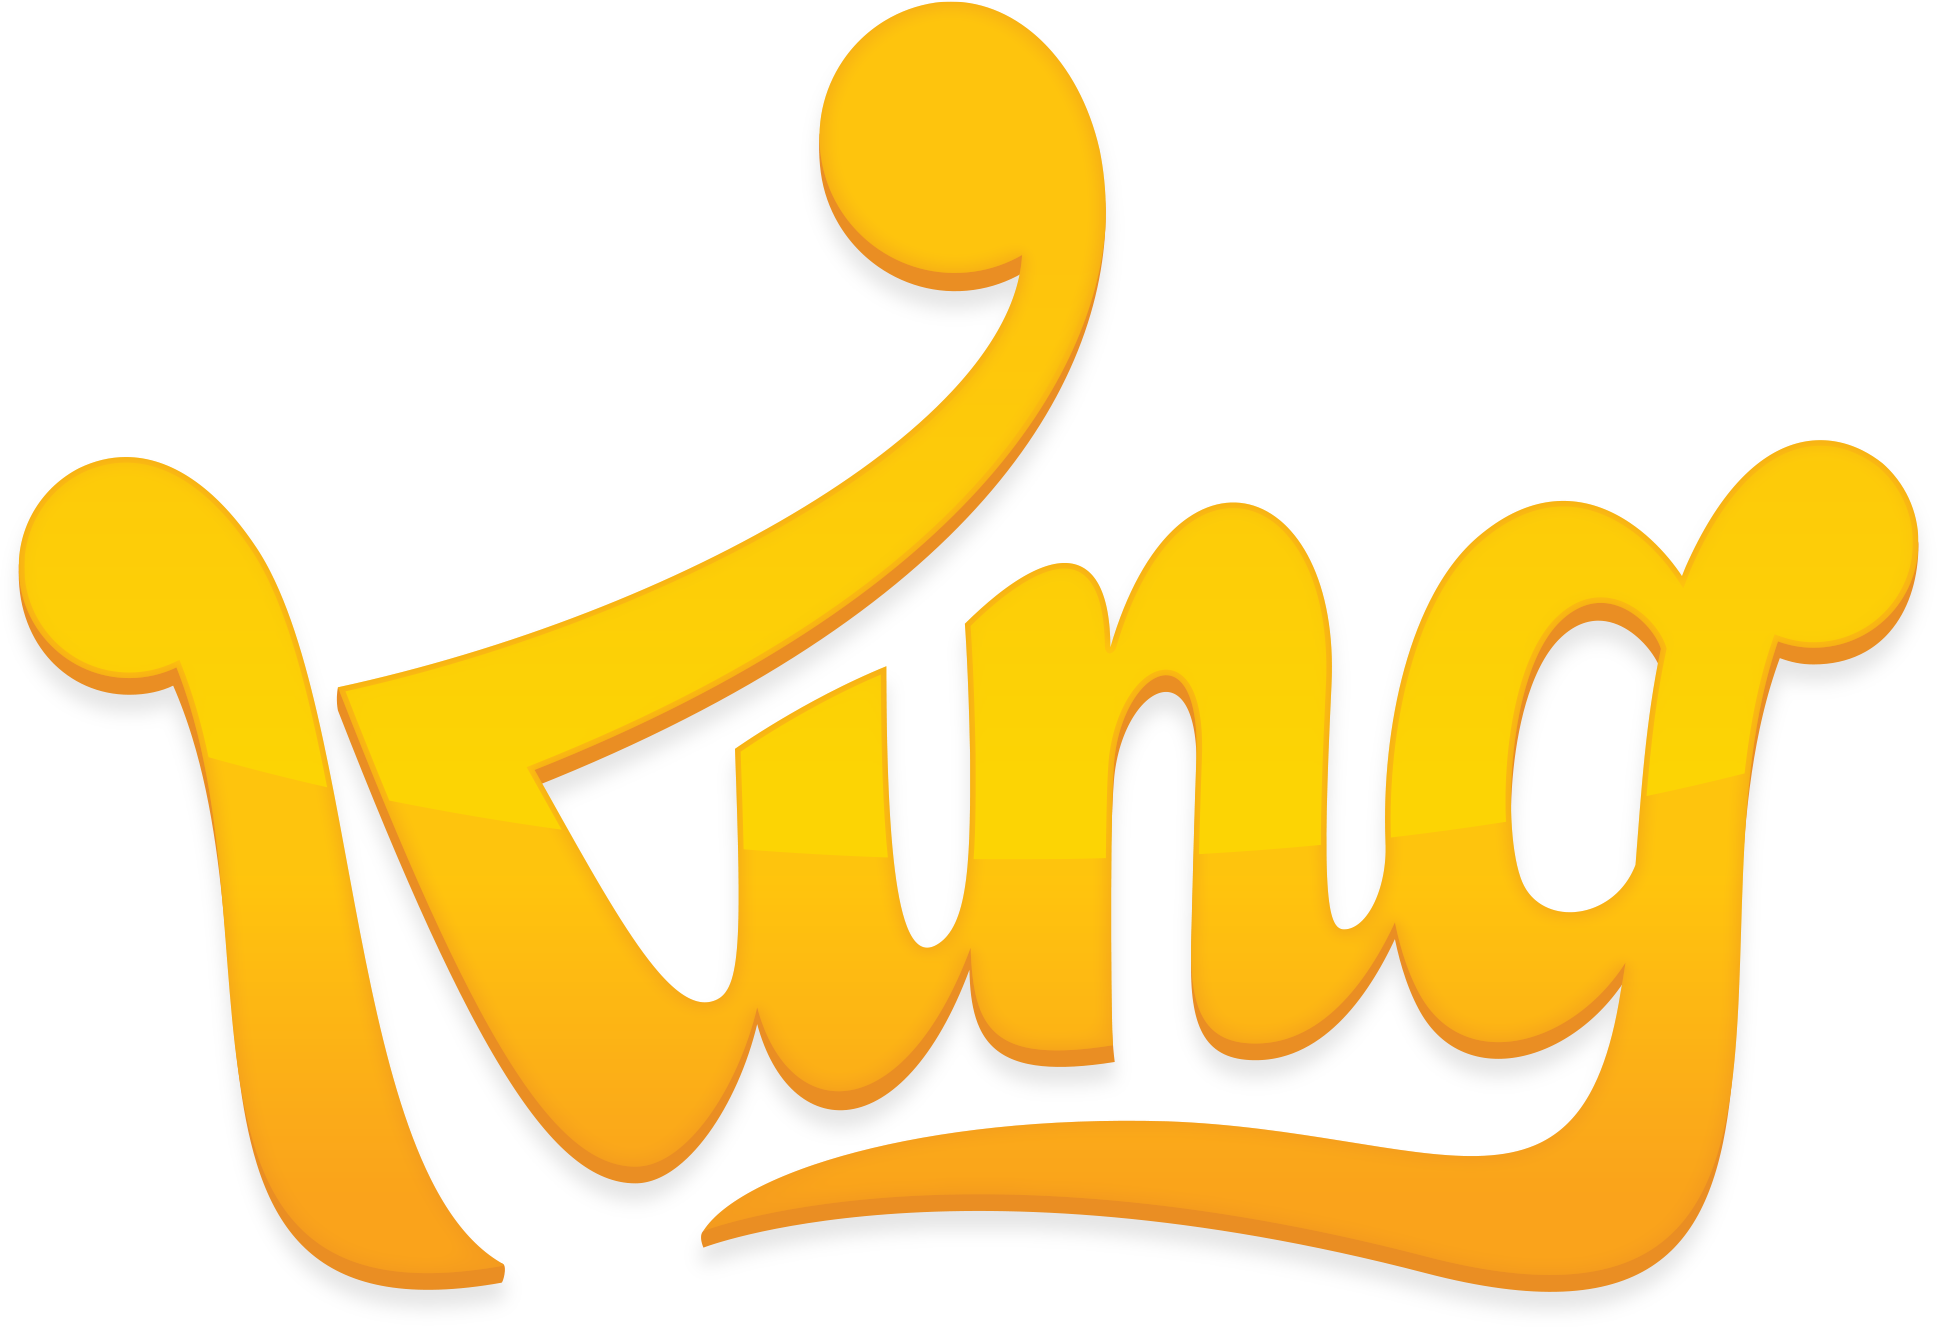 king-logo.png